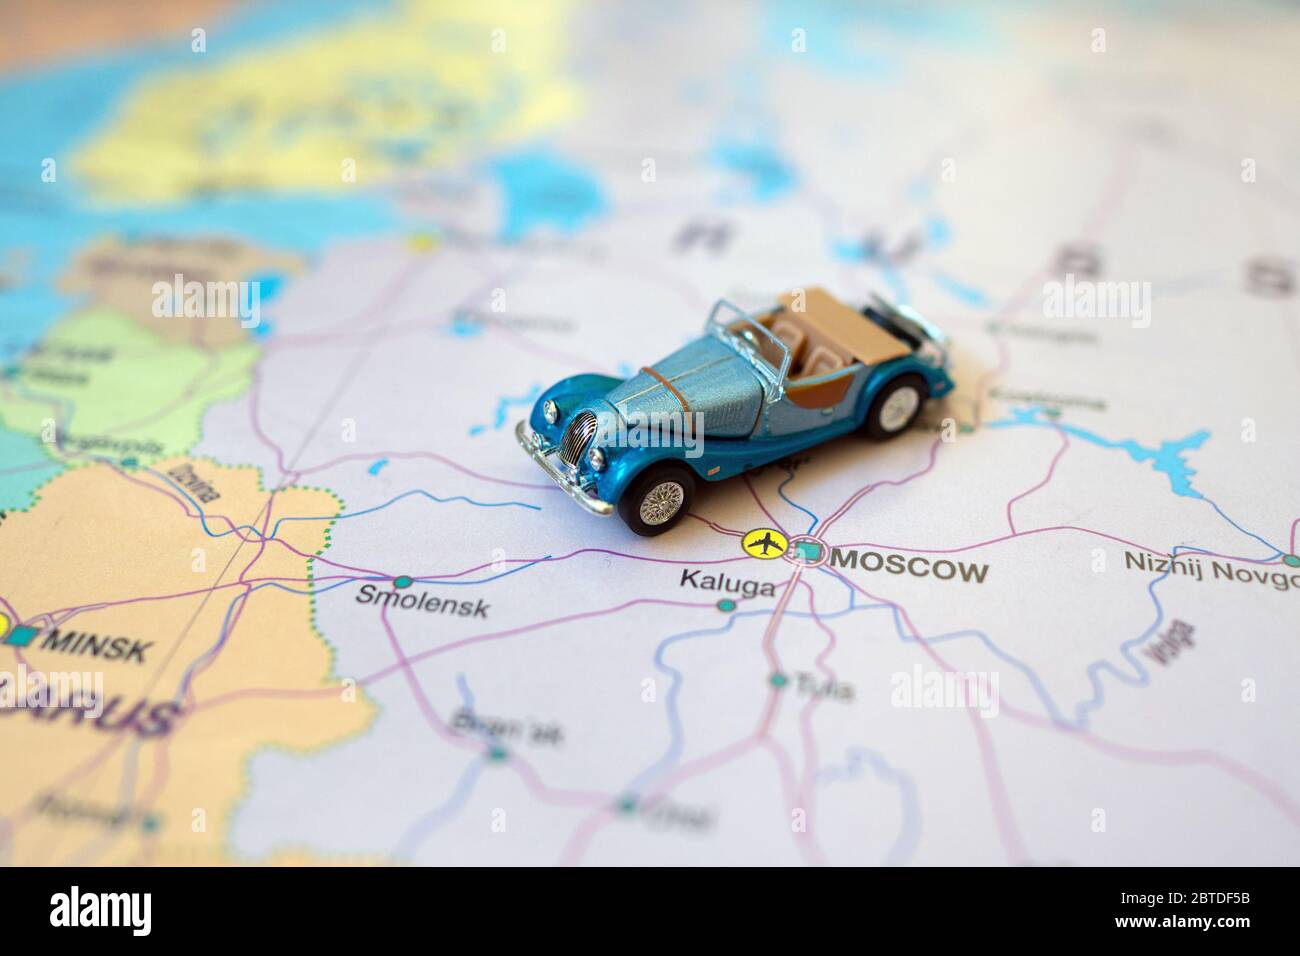 Kleines Spielzeug Retro Auto auf Europa Karte in Russland. Anreise mit dem Auto Konzept. Stockfoto